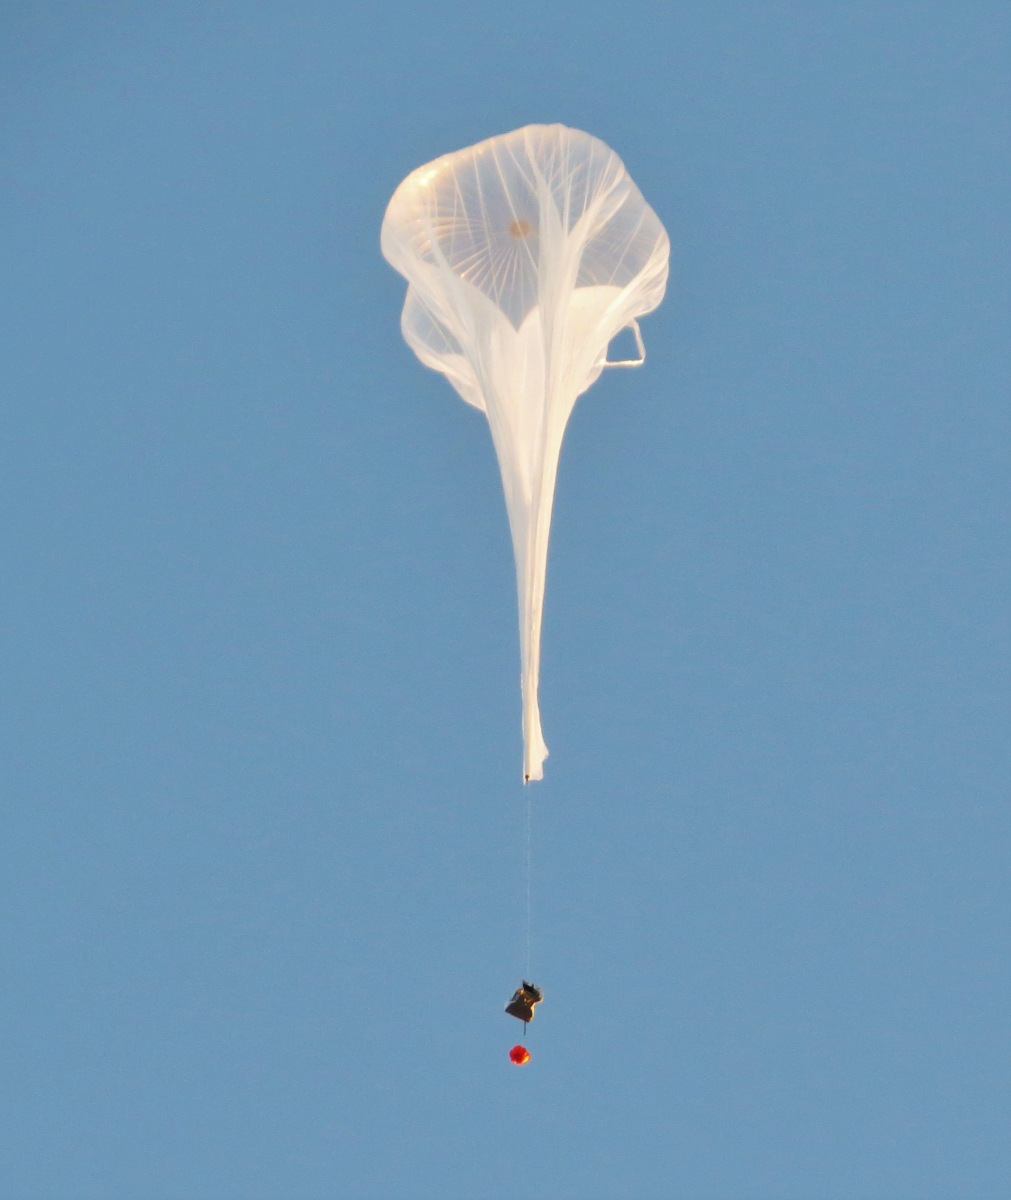 The balloon ascending (Image: NASA FOP)